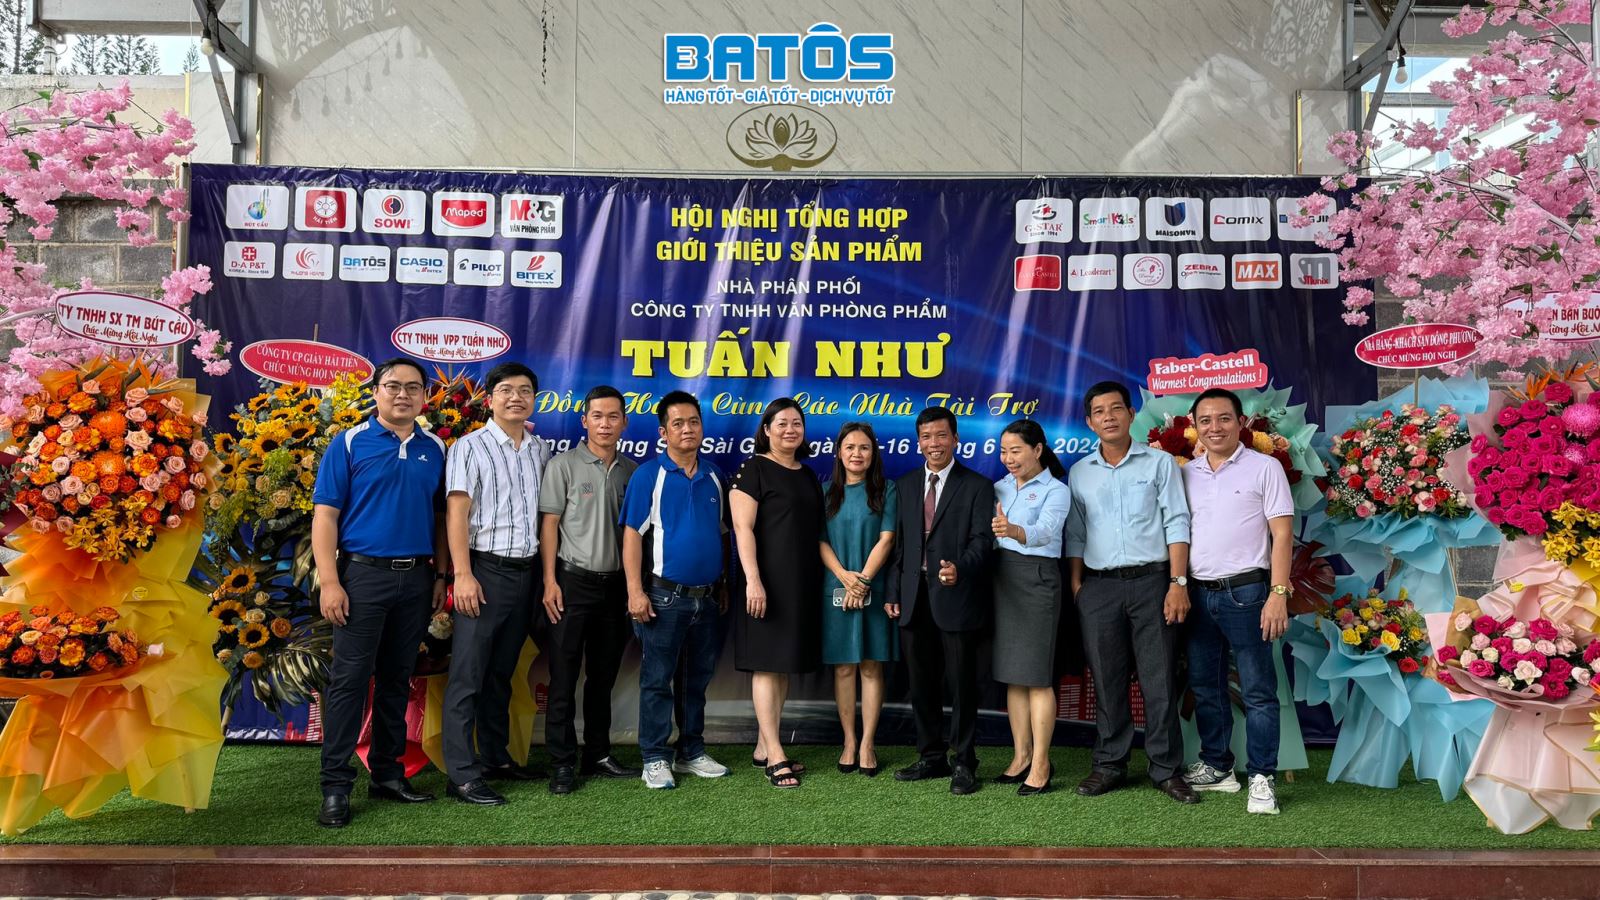 Chúc mừng hội nghị khách hàng NPP Tuấn Như - Lâm Đồng thành công rực rỡ